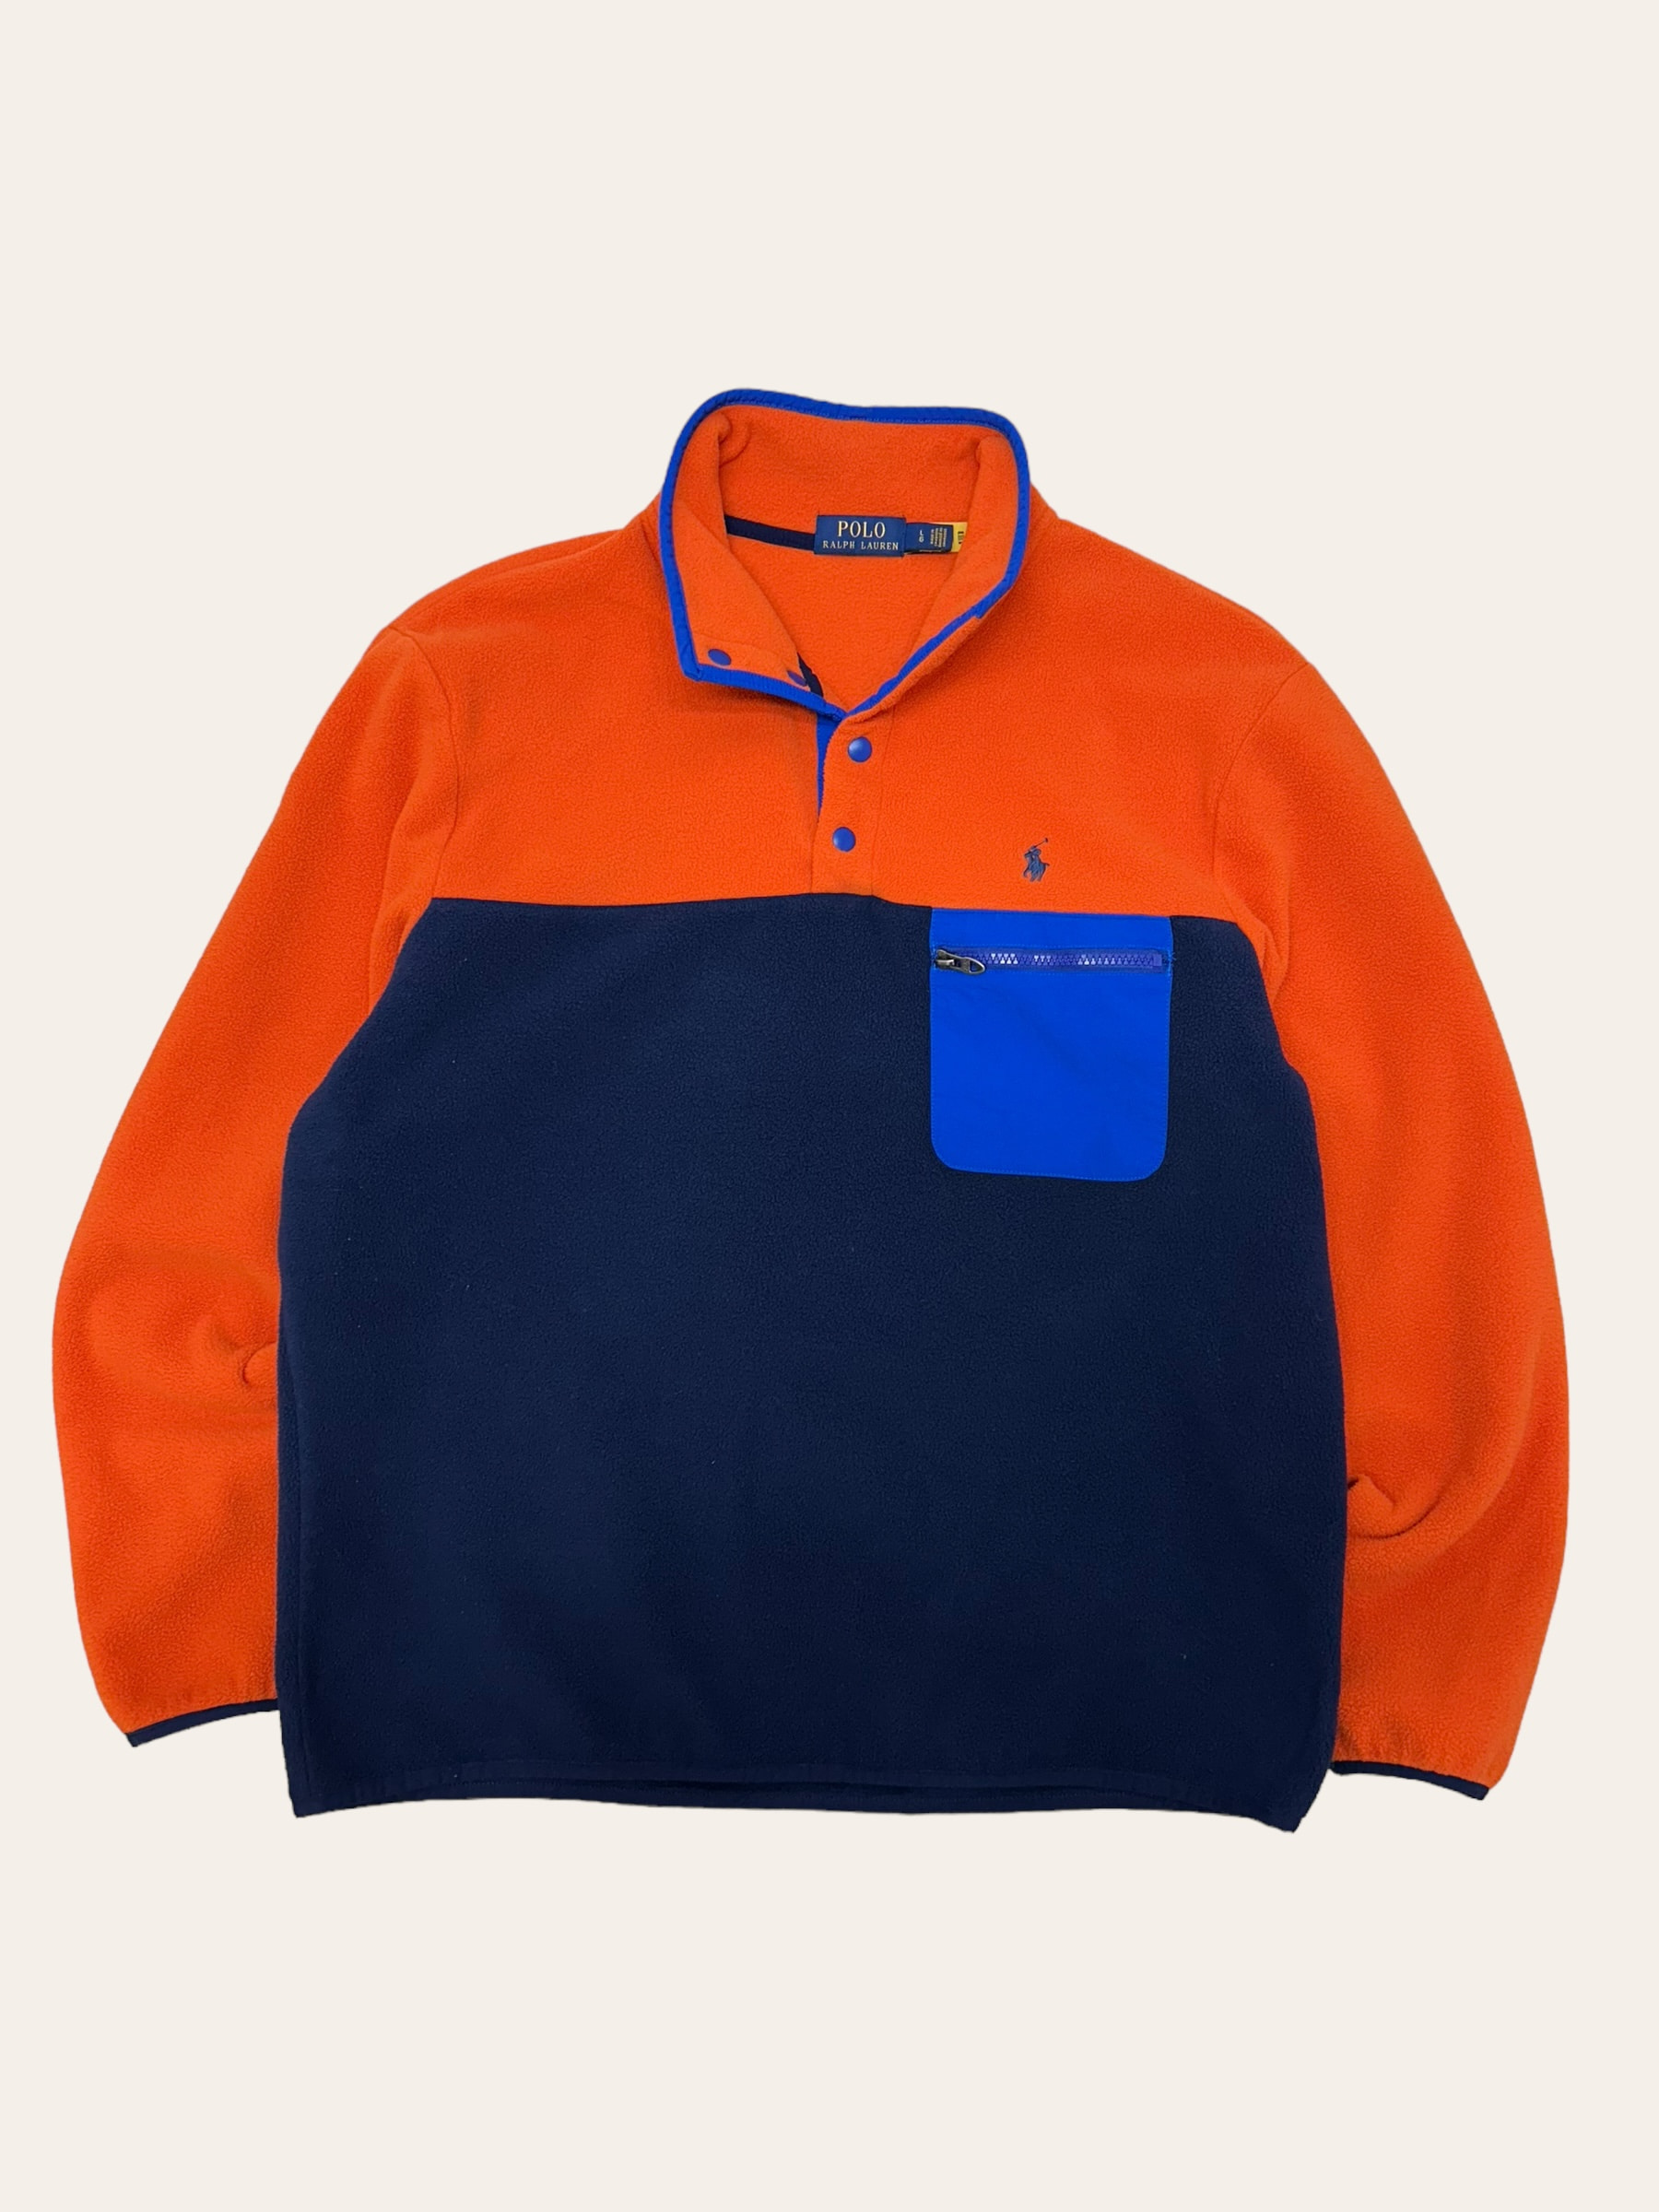 Polo ralph lauren orange/navy fleece pullover L